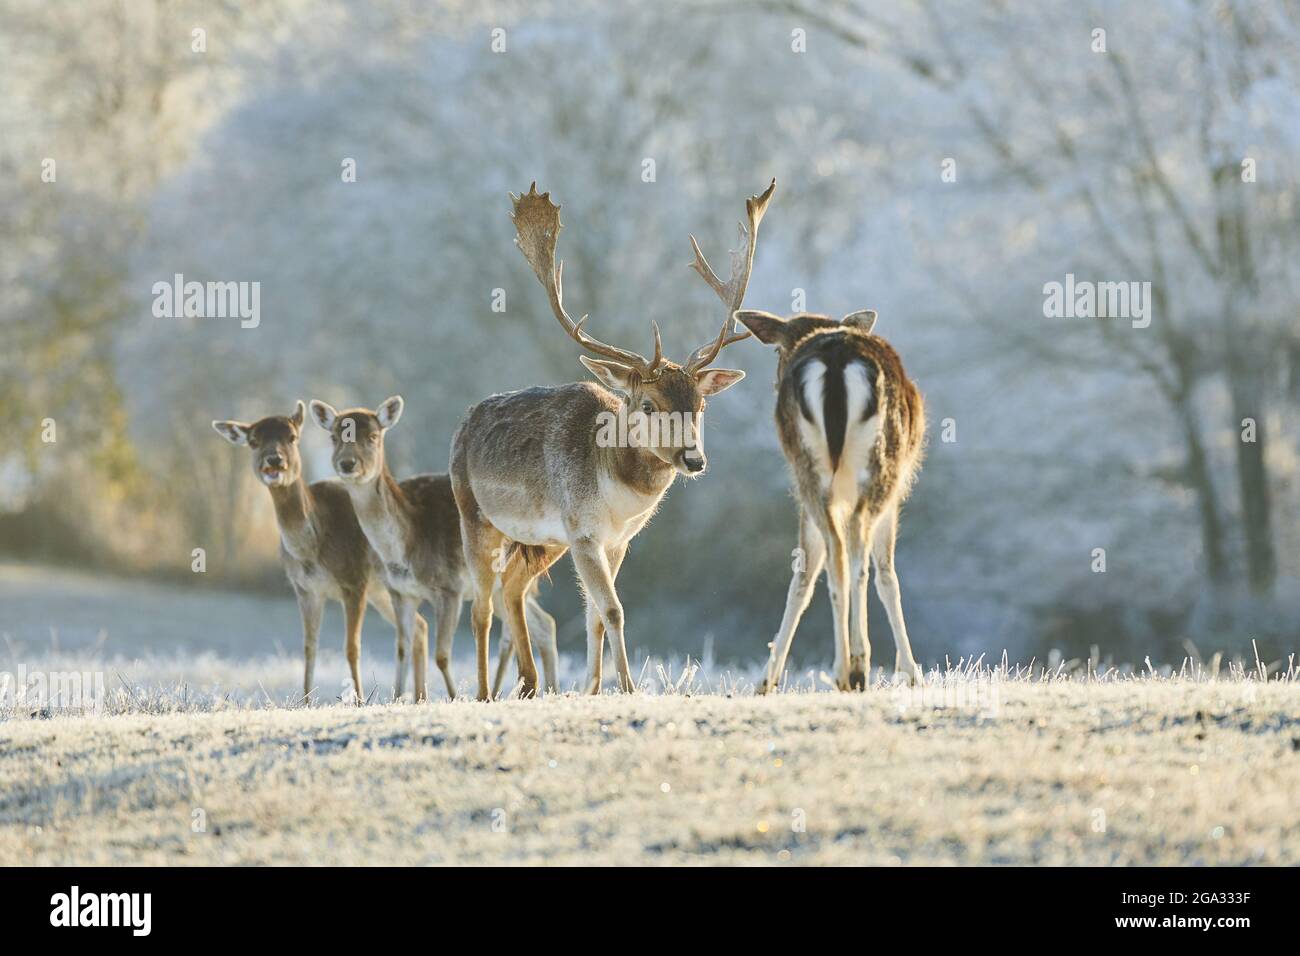 Fallow deer (Dama dama) on a frozen meadow; Bavaria, Germany Stock Photo